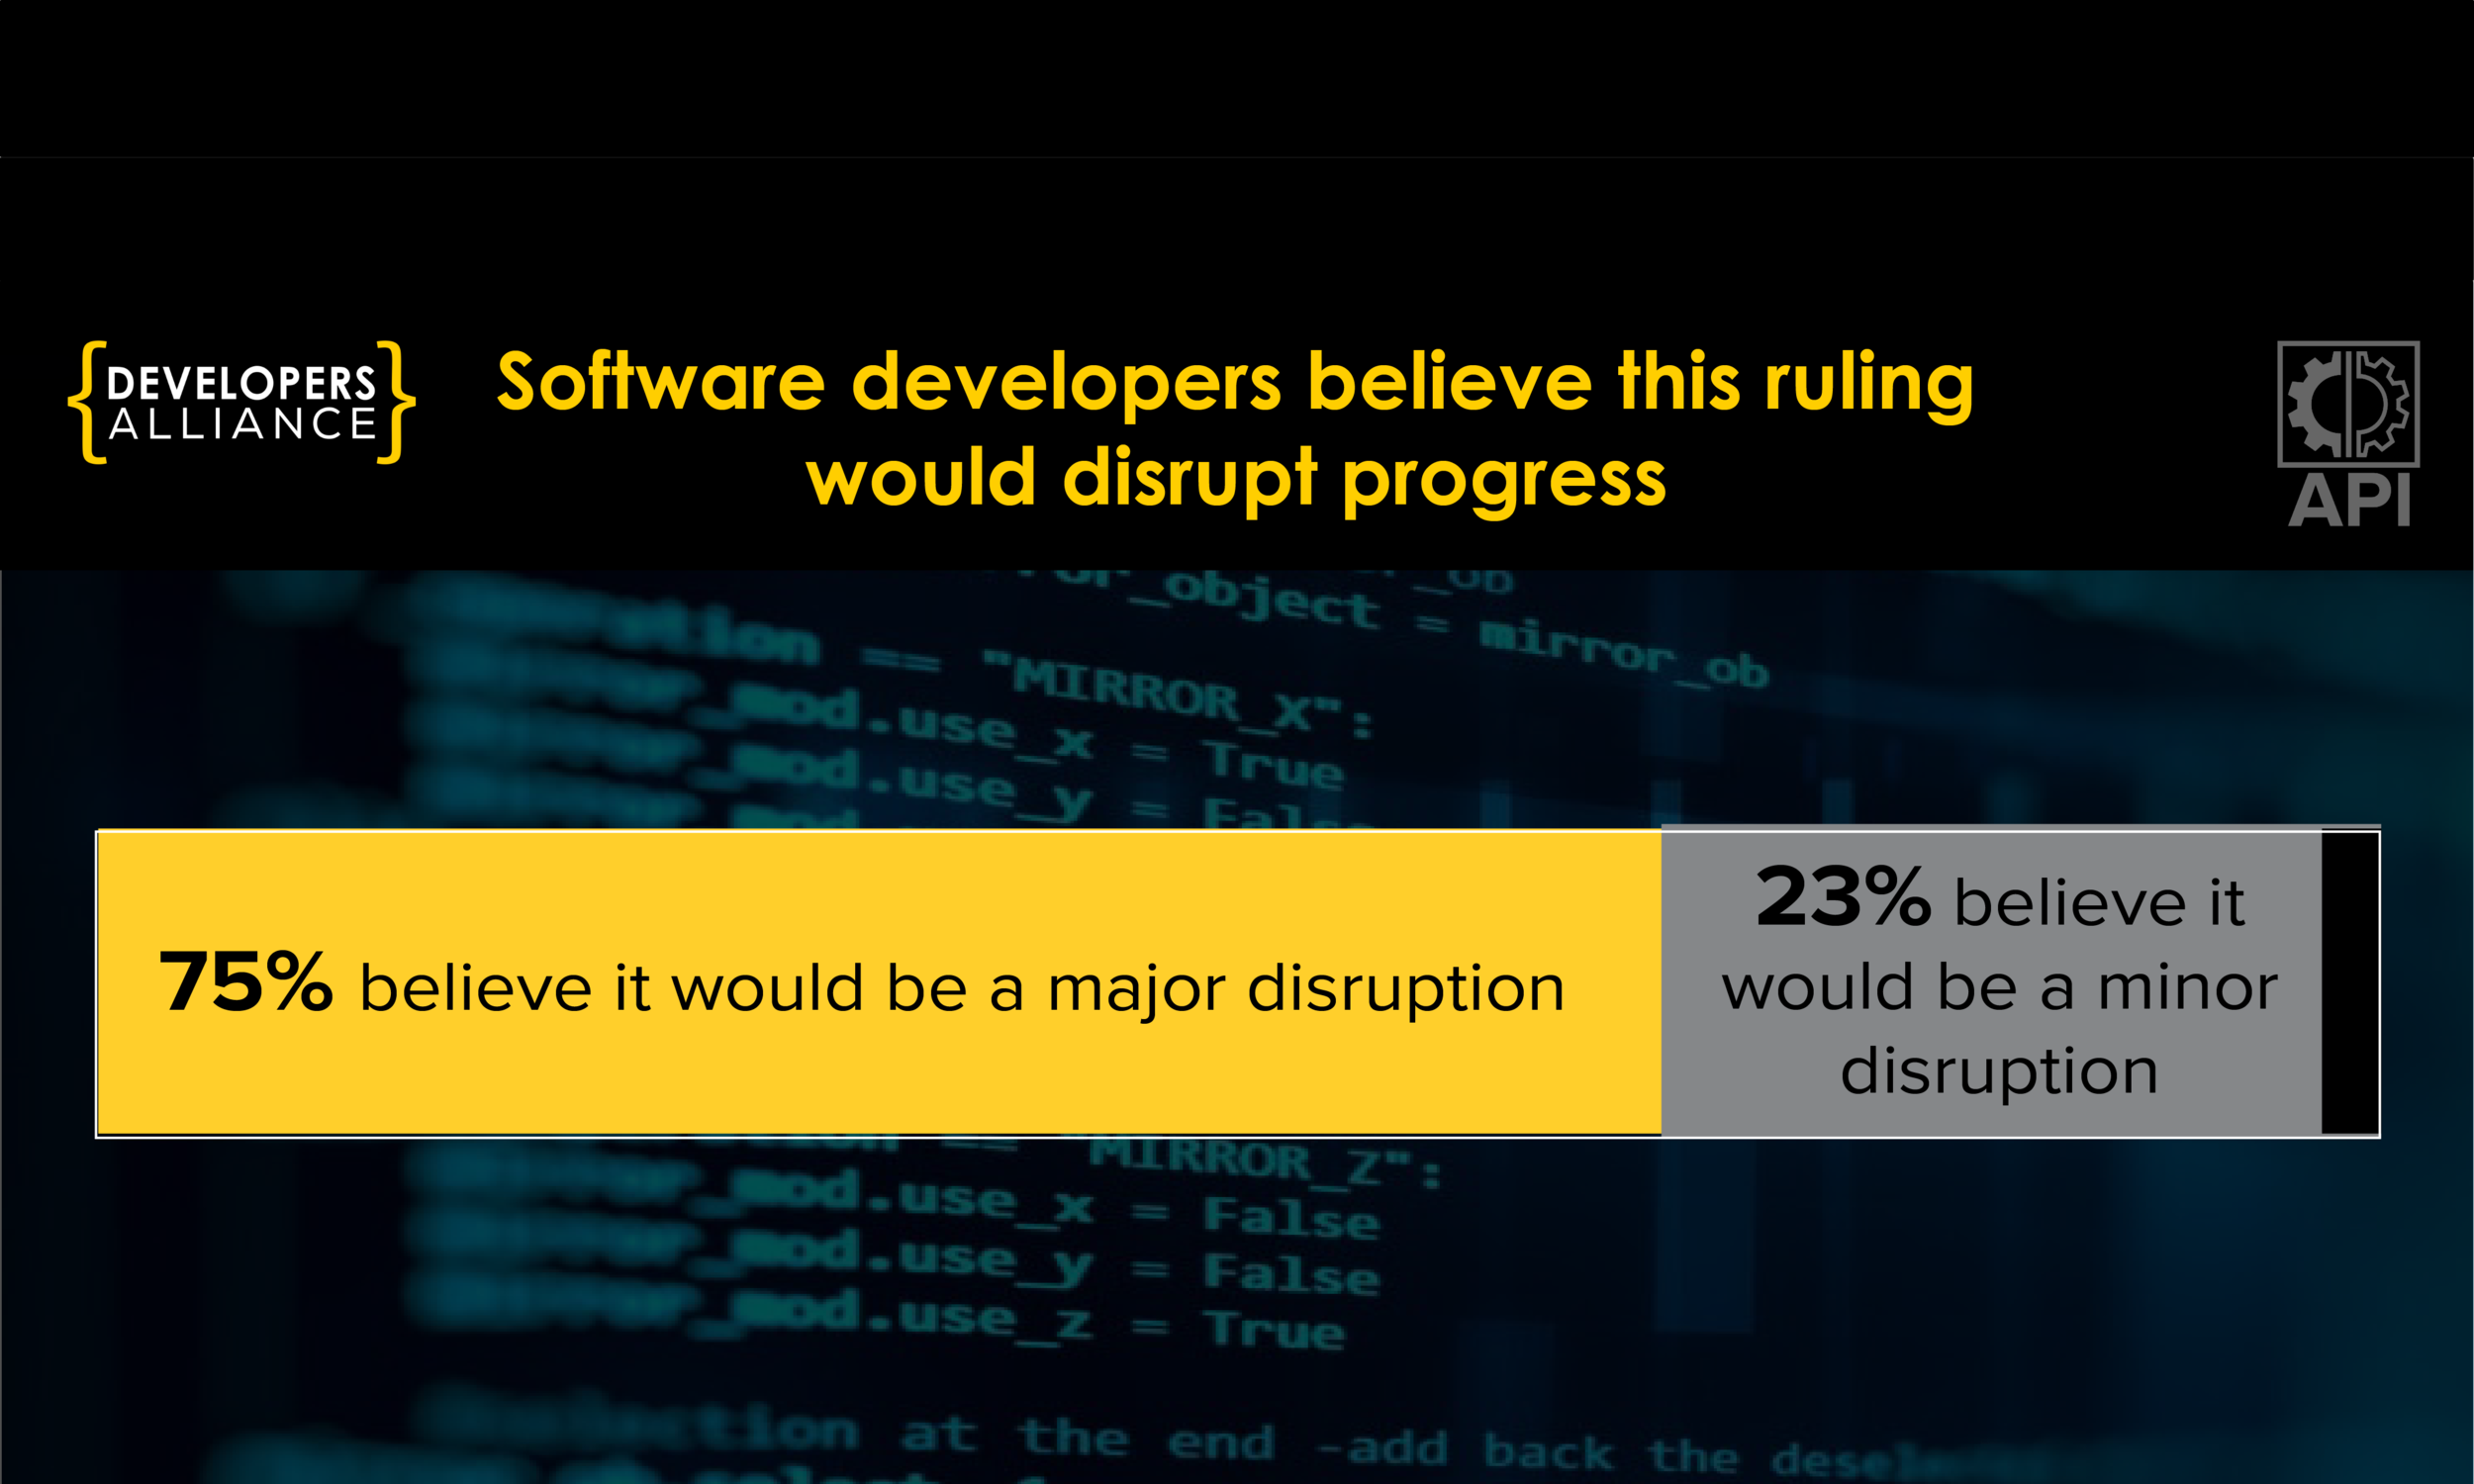 75% believe it would be a major disruption. 23% believe it would be a minor disruption.